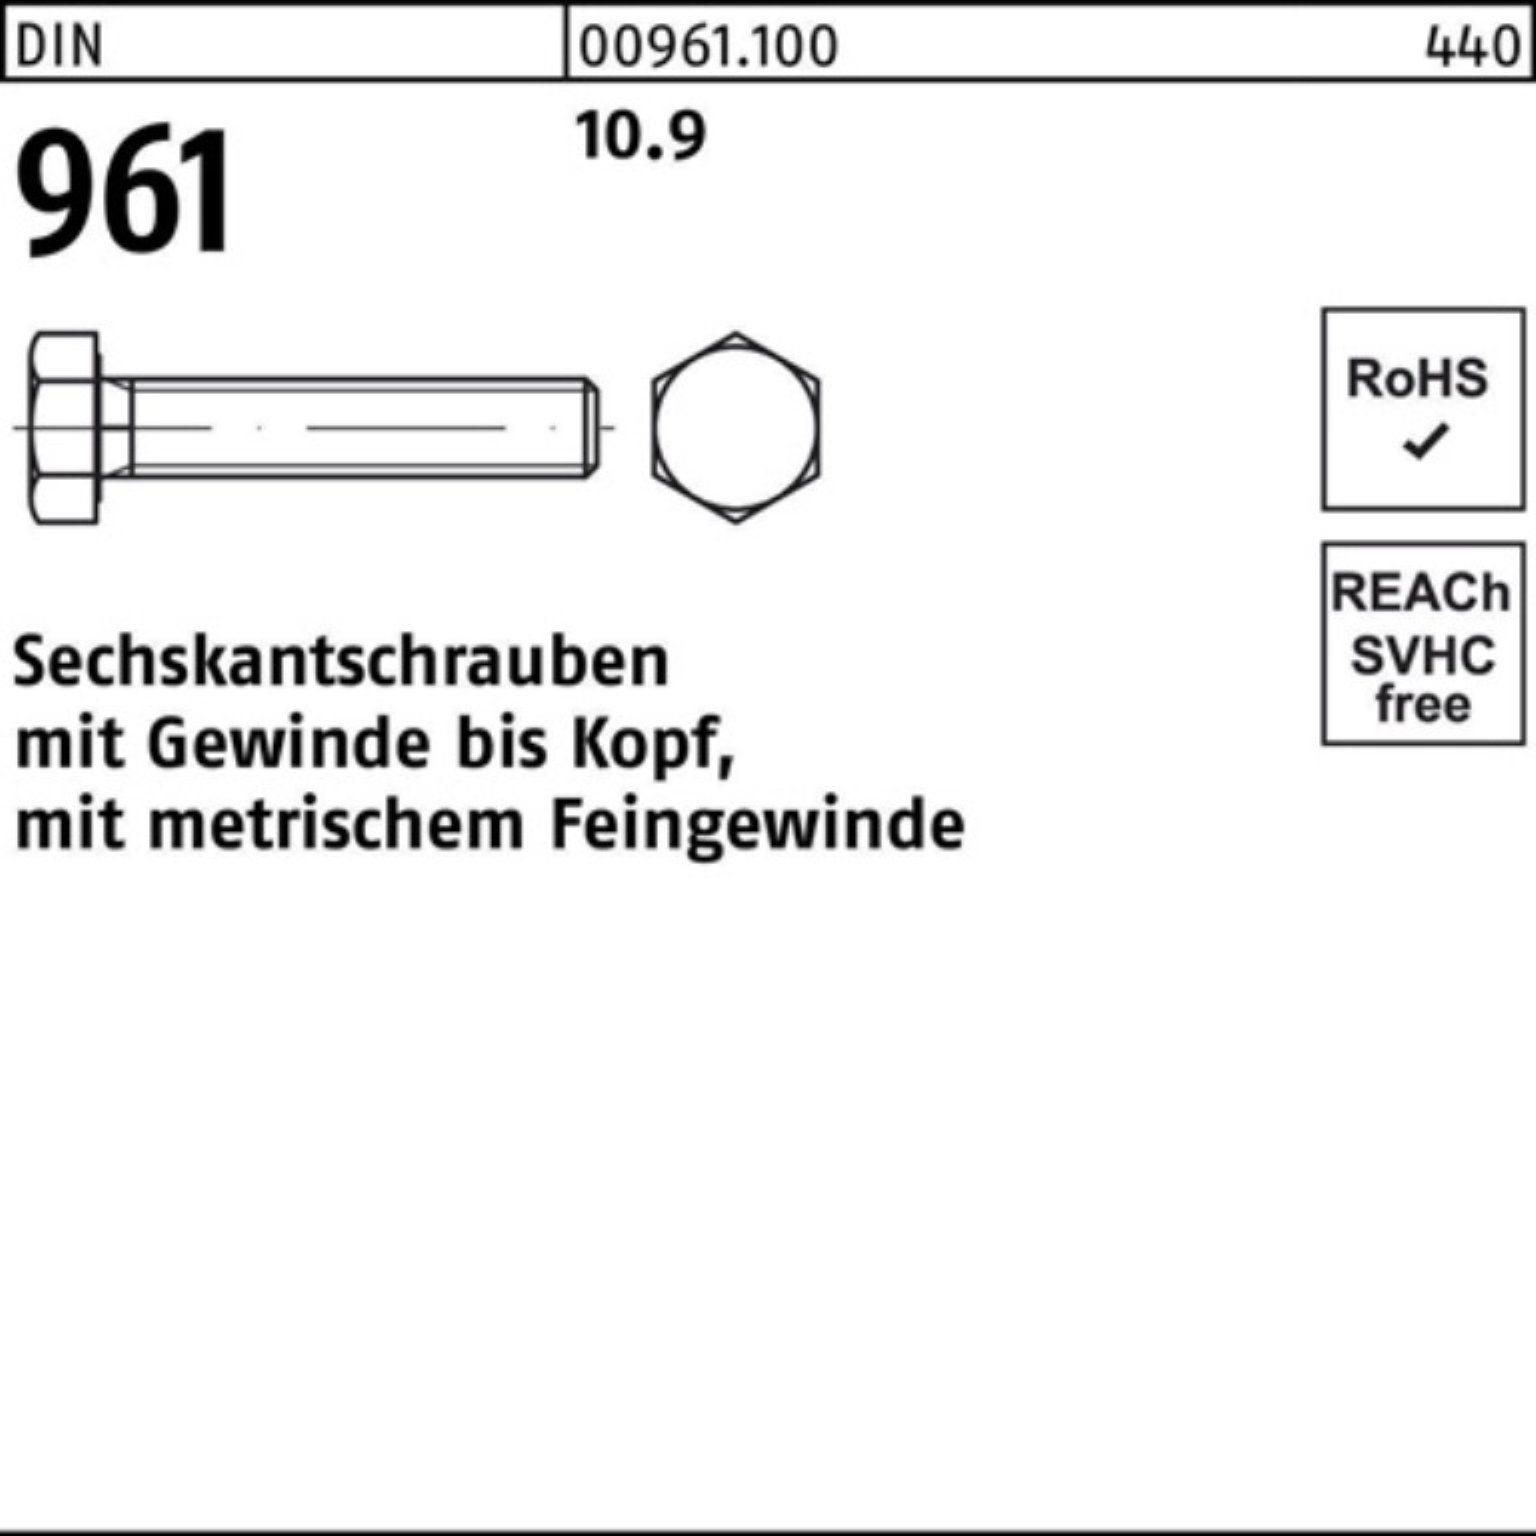 Reyher Sechskantschraube 100er Pack Sechskantschraube 50 DIN Stück 961 M12x1,5x120 VG DIN 10.9